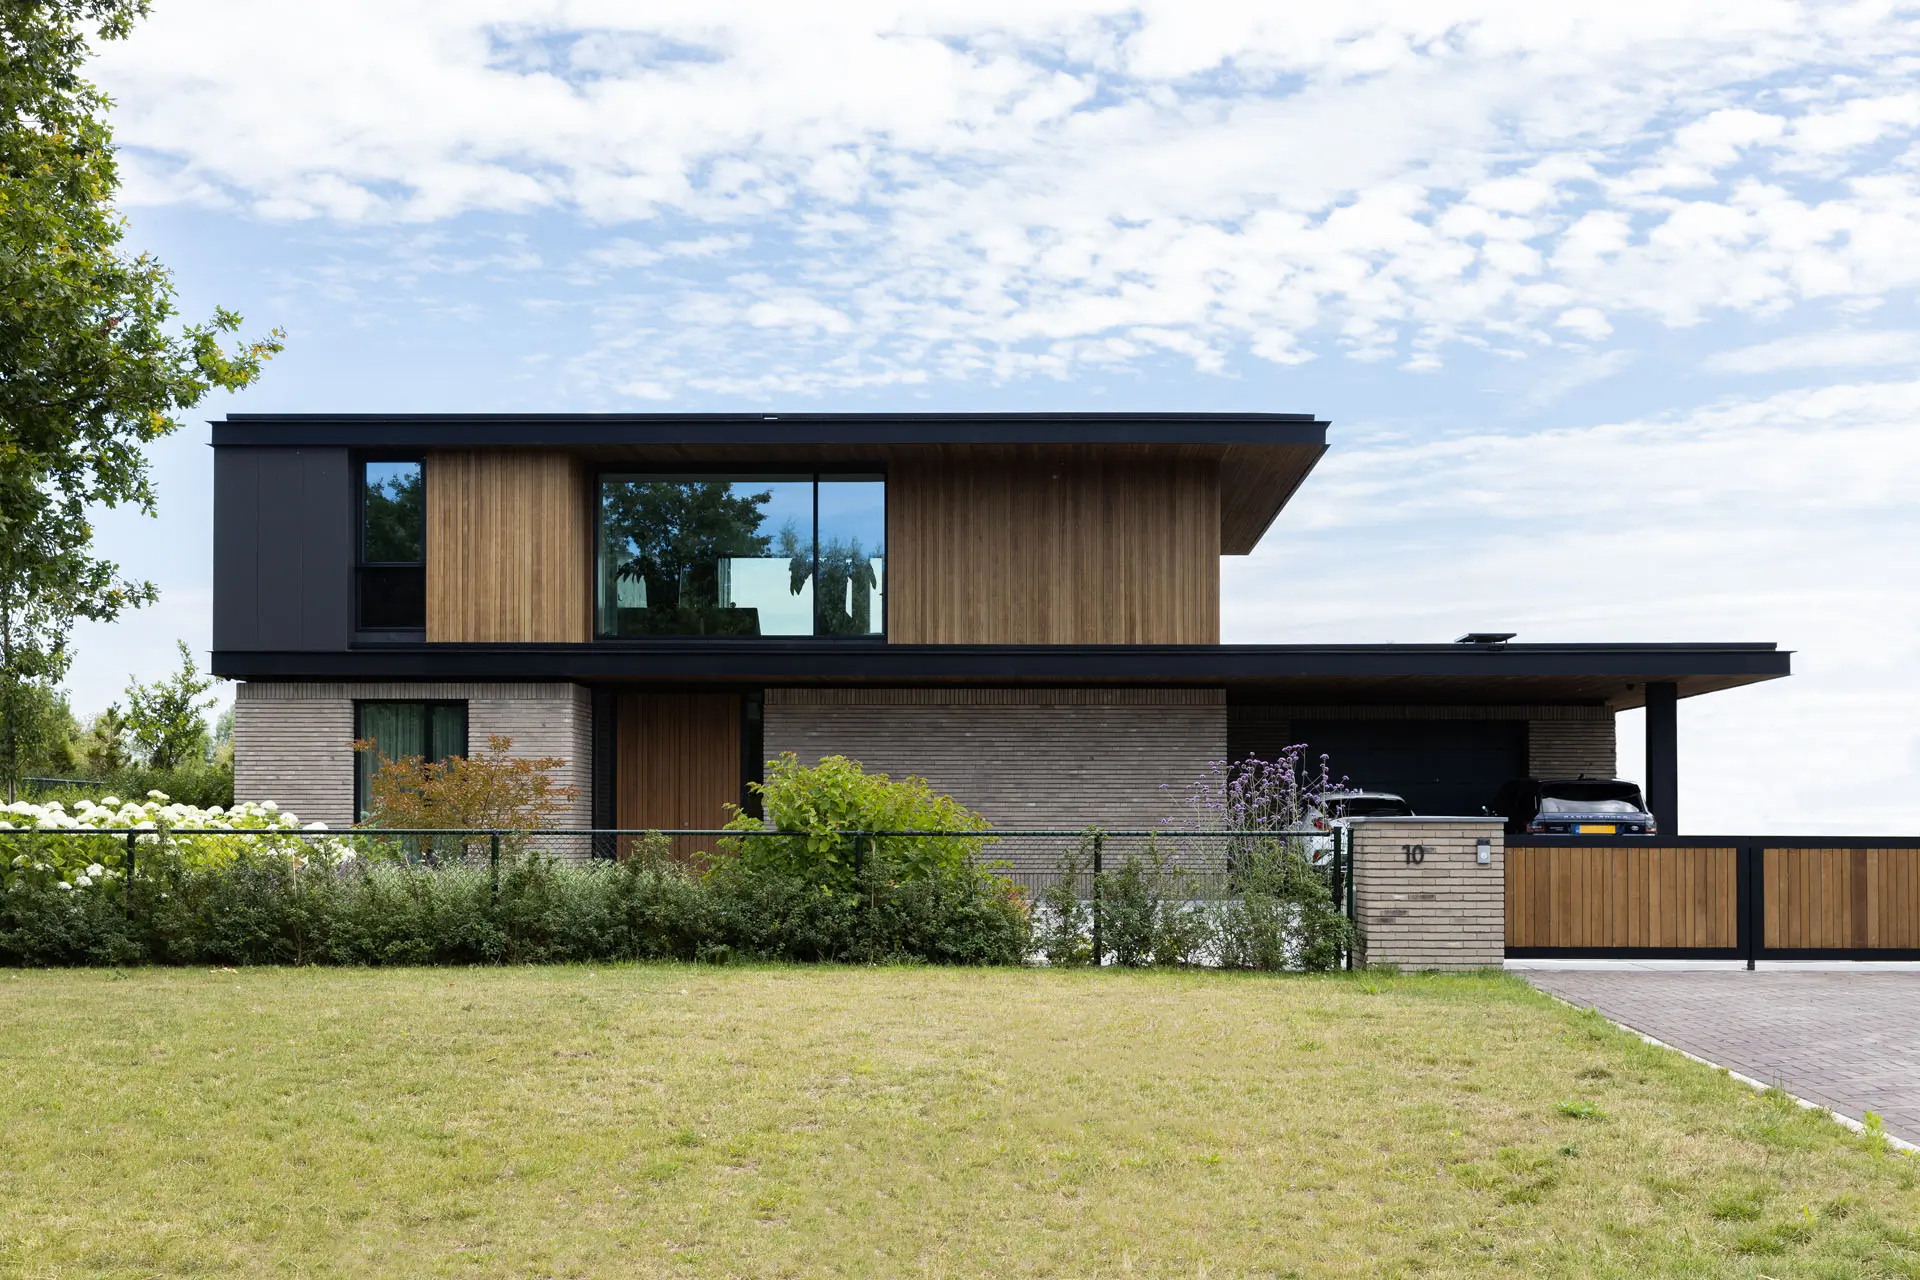 ENZO architectuur N interieur - Burgerveen - Leimuiden - Silo - Haarlemmermeer - vrijstaande Villa - Spa aan huis - cover